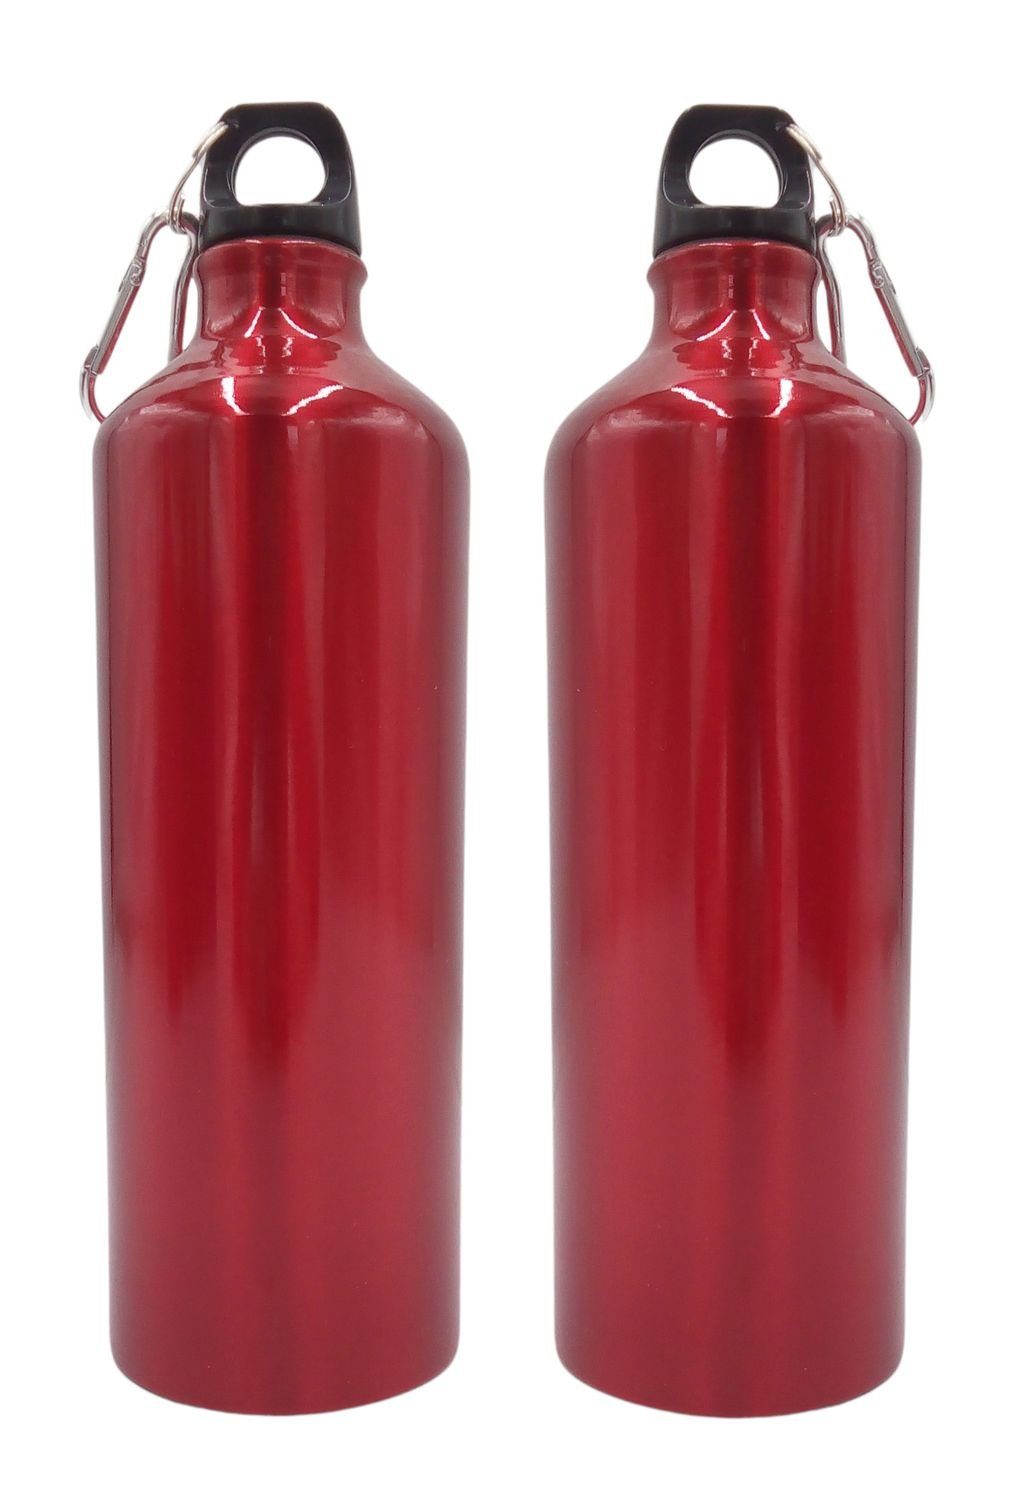 BURI Trinkflasche 2x Aluminium Trinkflasche 1 Liter rot mit Karabiner Wasserflasche Spor